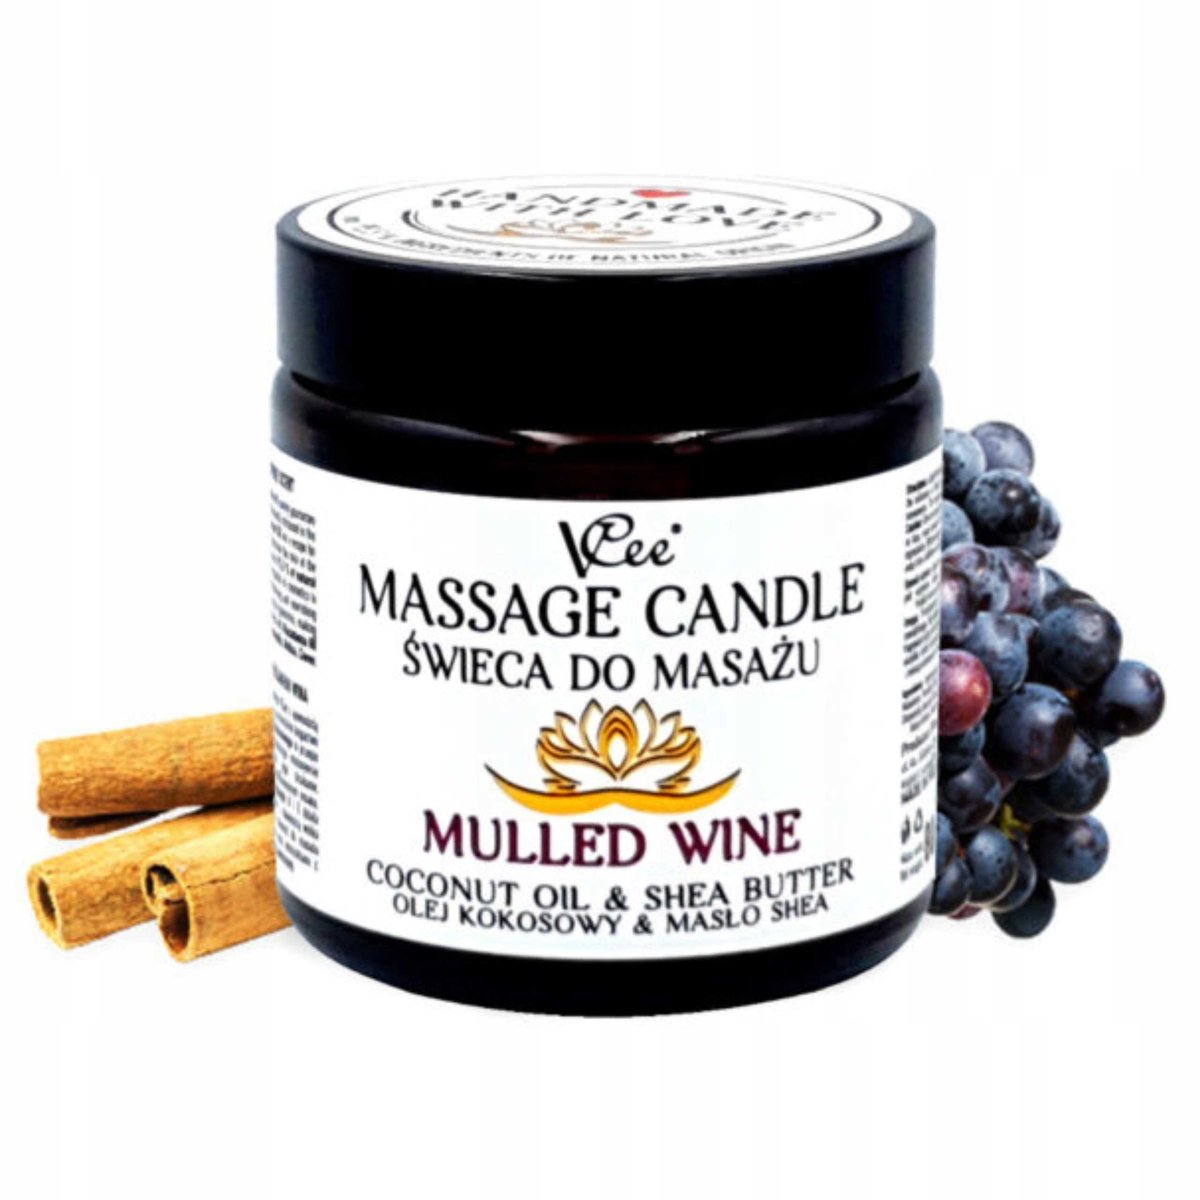 Nawilżająca świeca do masażu VCee 80 g - różne zapachy - Mulled Wine